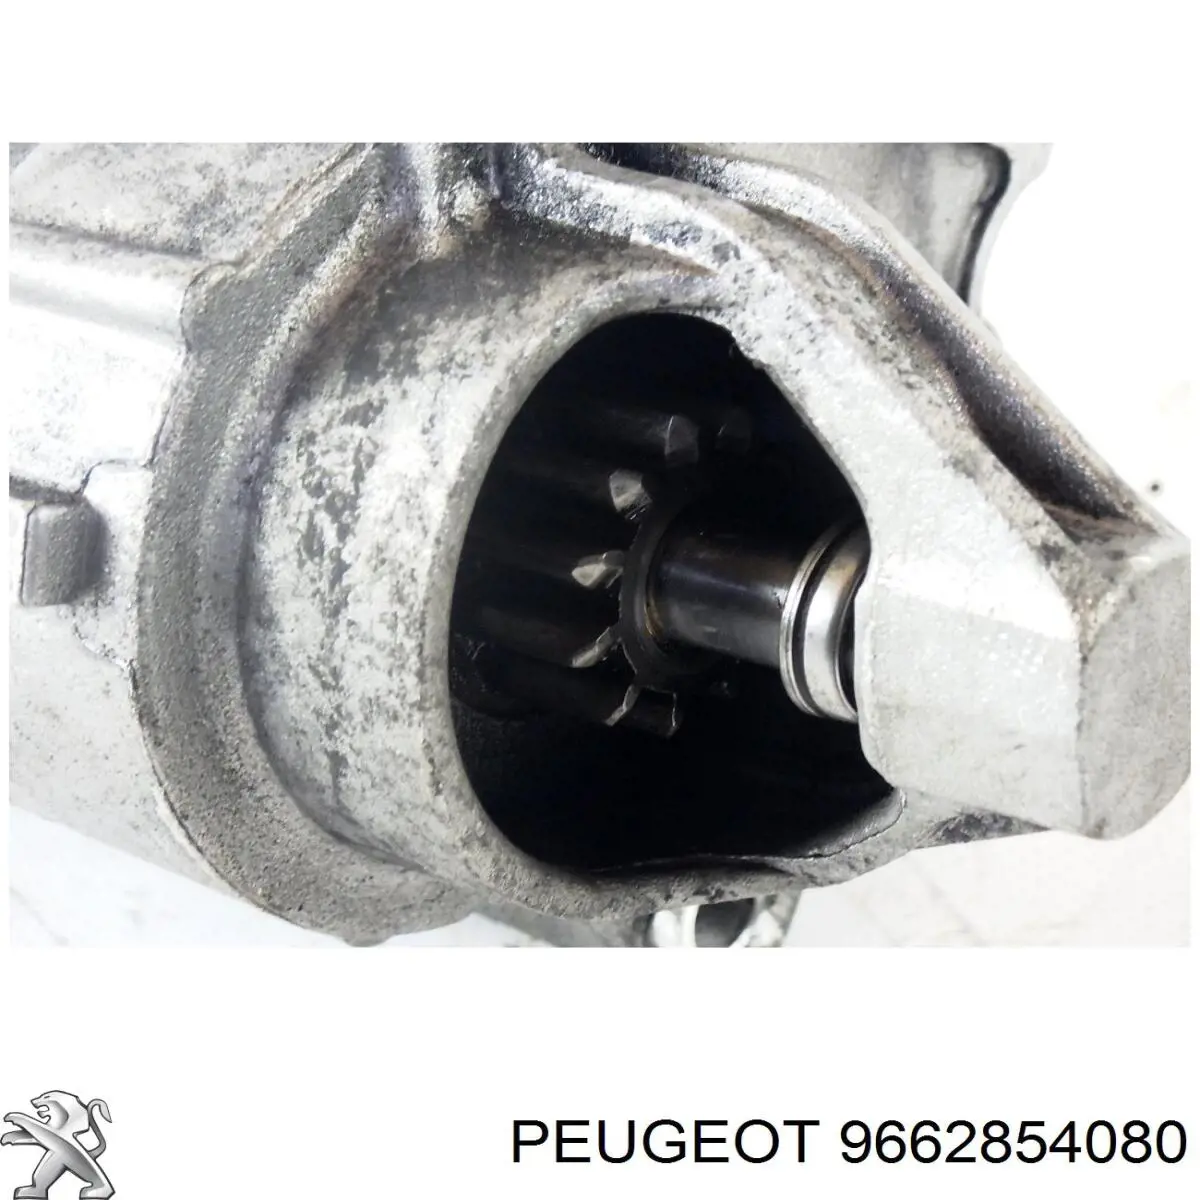 9662854080 Peugeot/Citroen motor de arranque